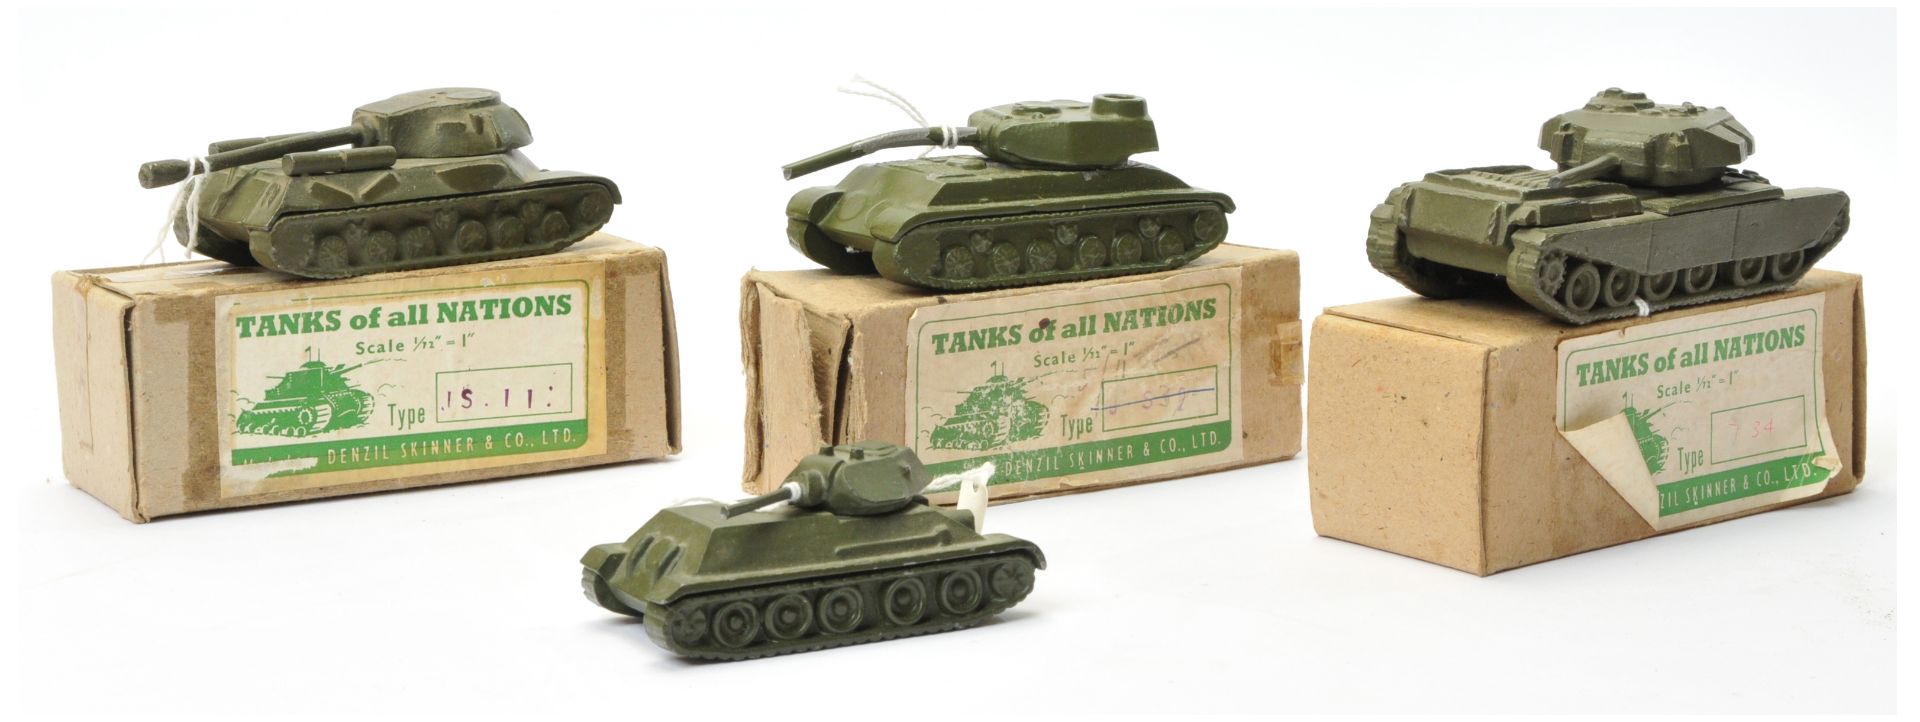 Denzil Skinner & Co Ltd "Tanks of all Nations" series - Group of 4 X Tanks larger scale